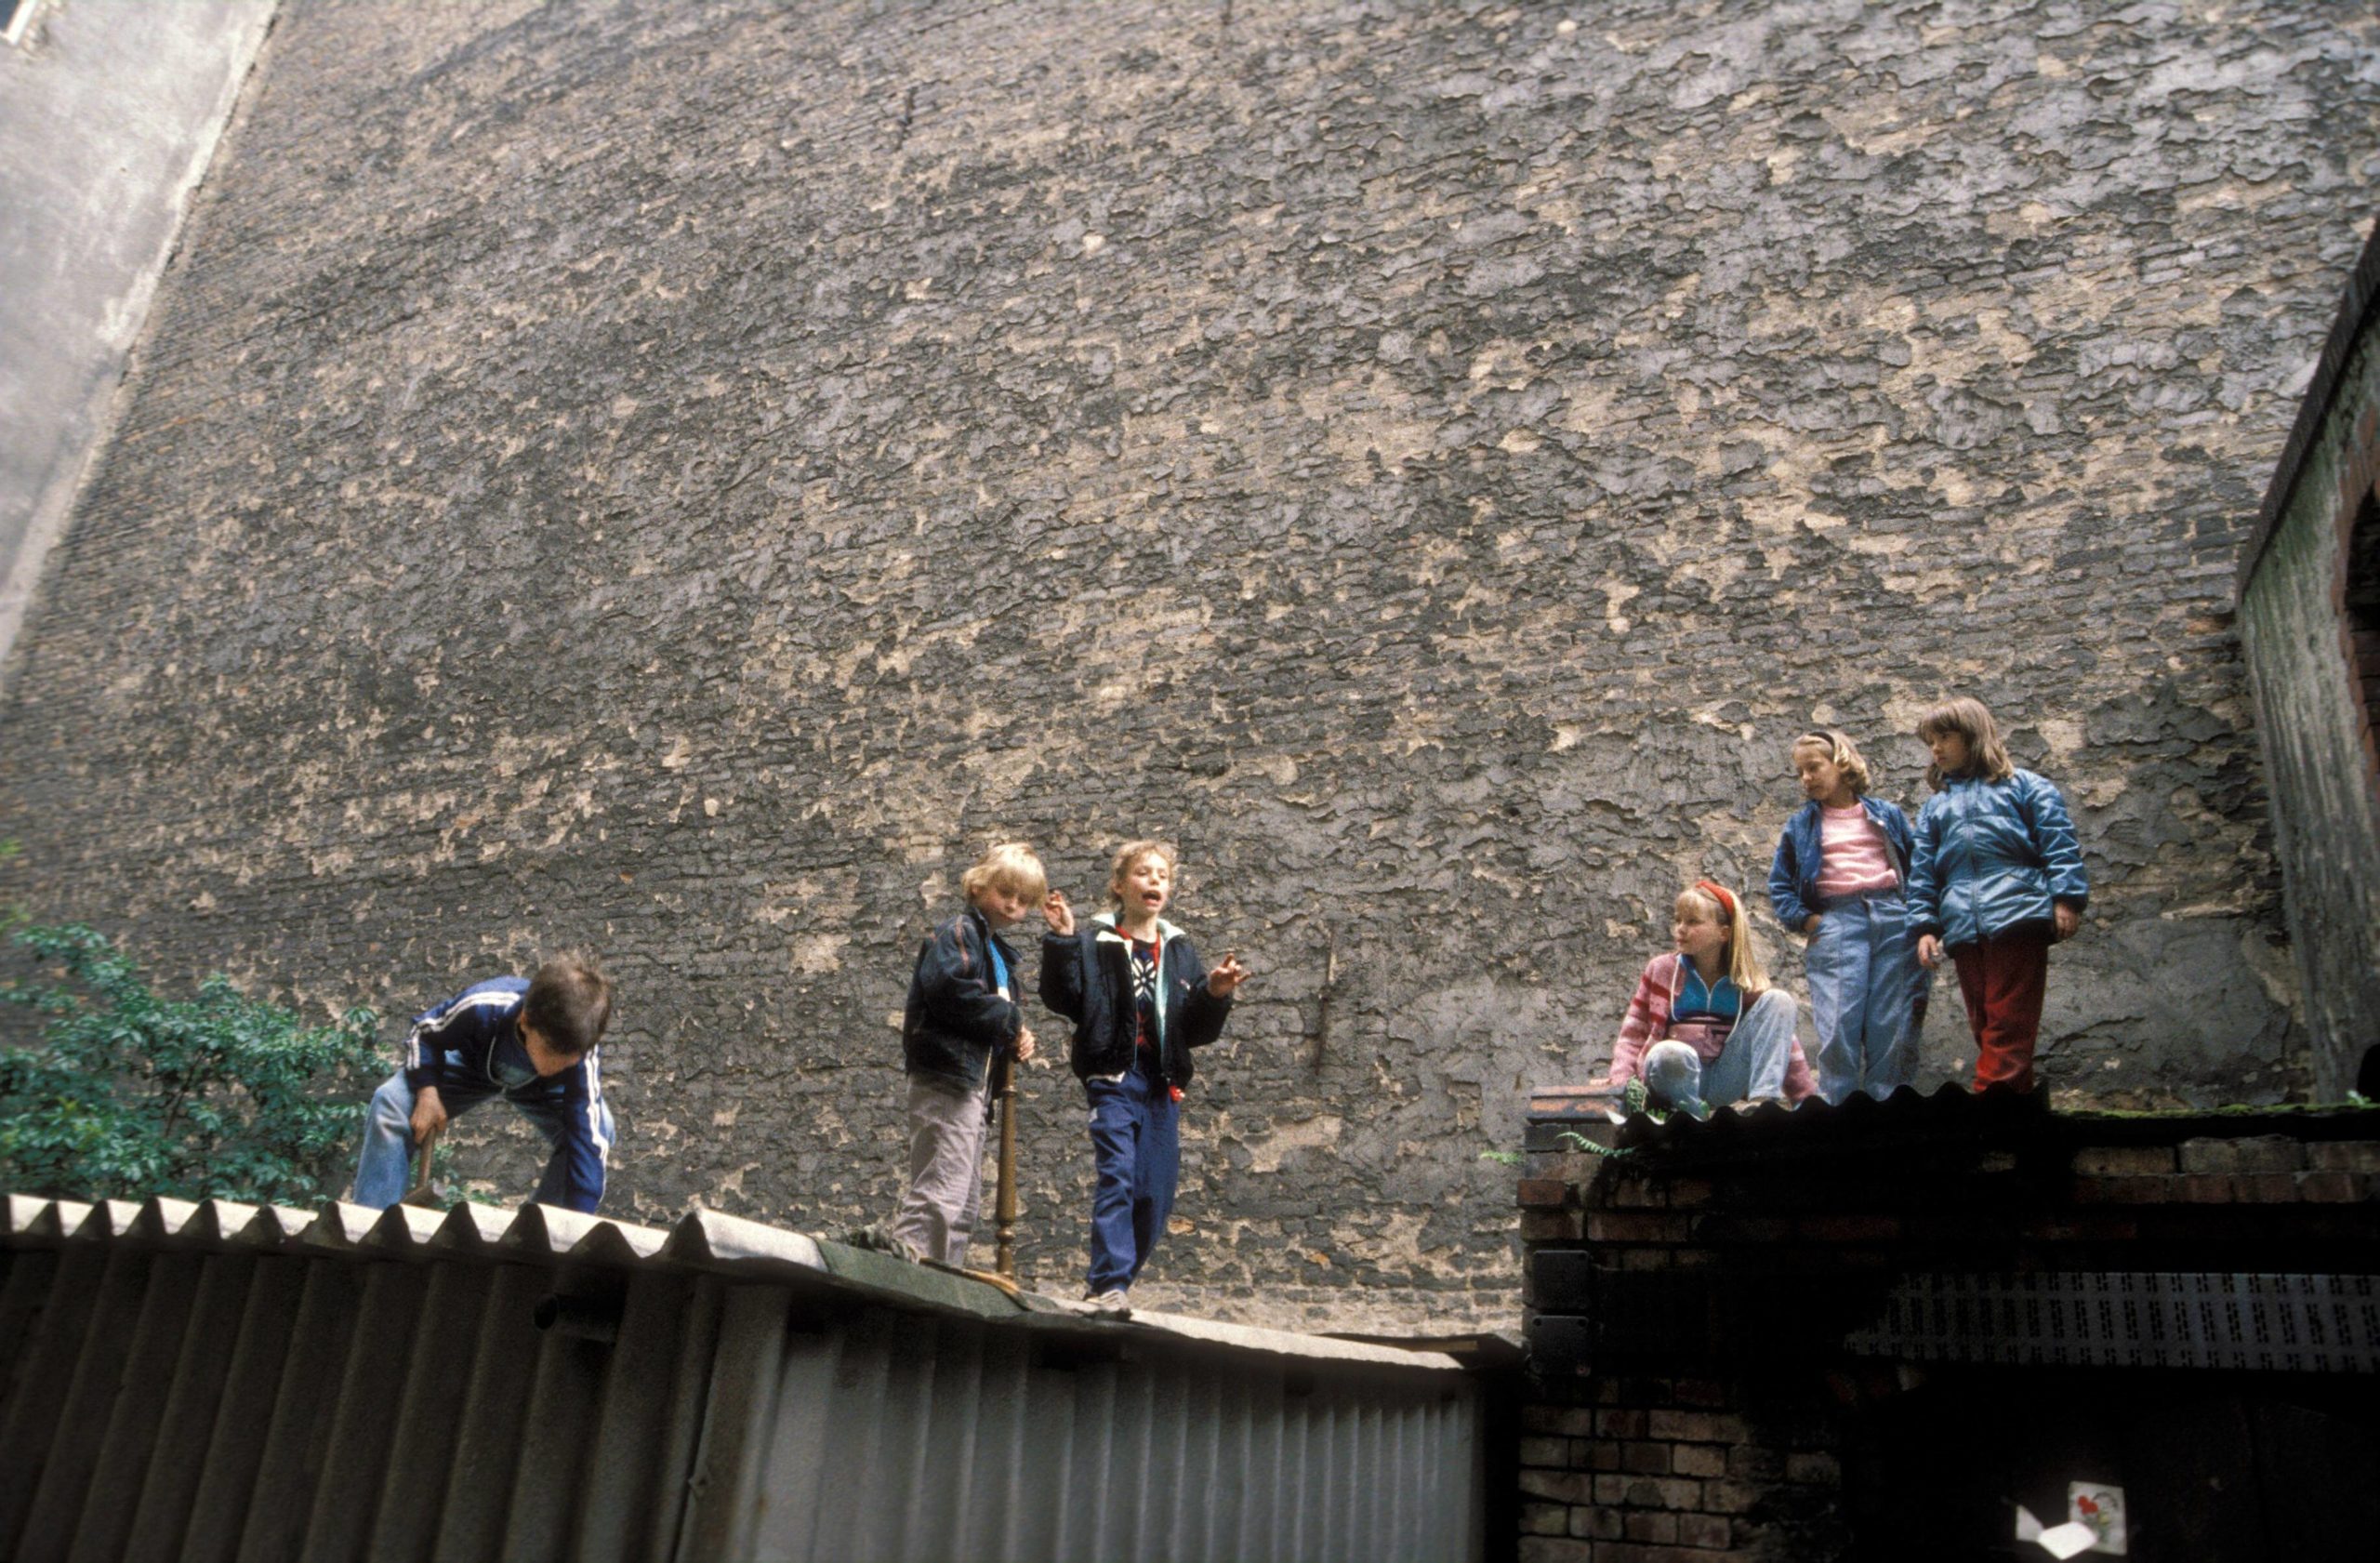 Brandwände in Berlin: Kinder spielen in einem Hinterhof in Prenzlauer Berg, 1991. Foto: Imago/Werner Schulze